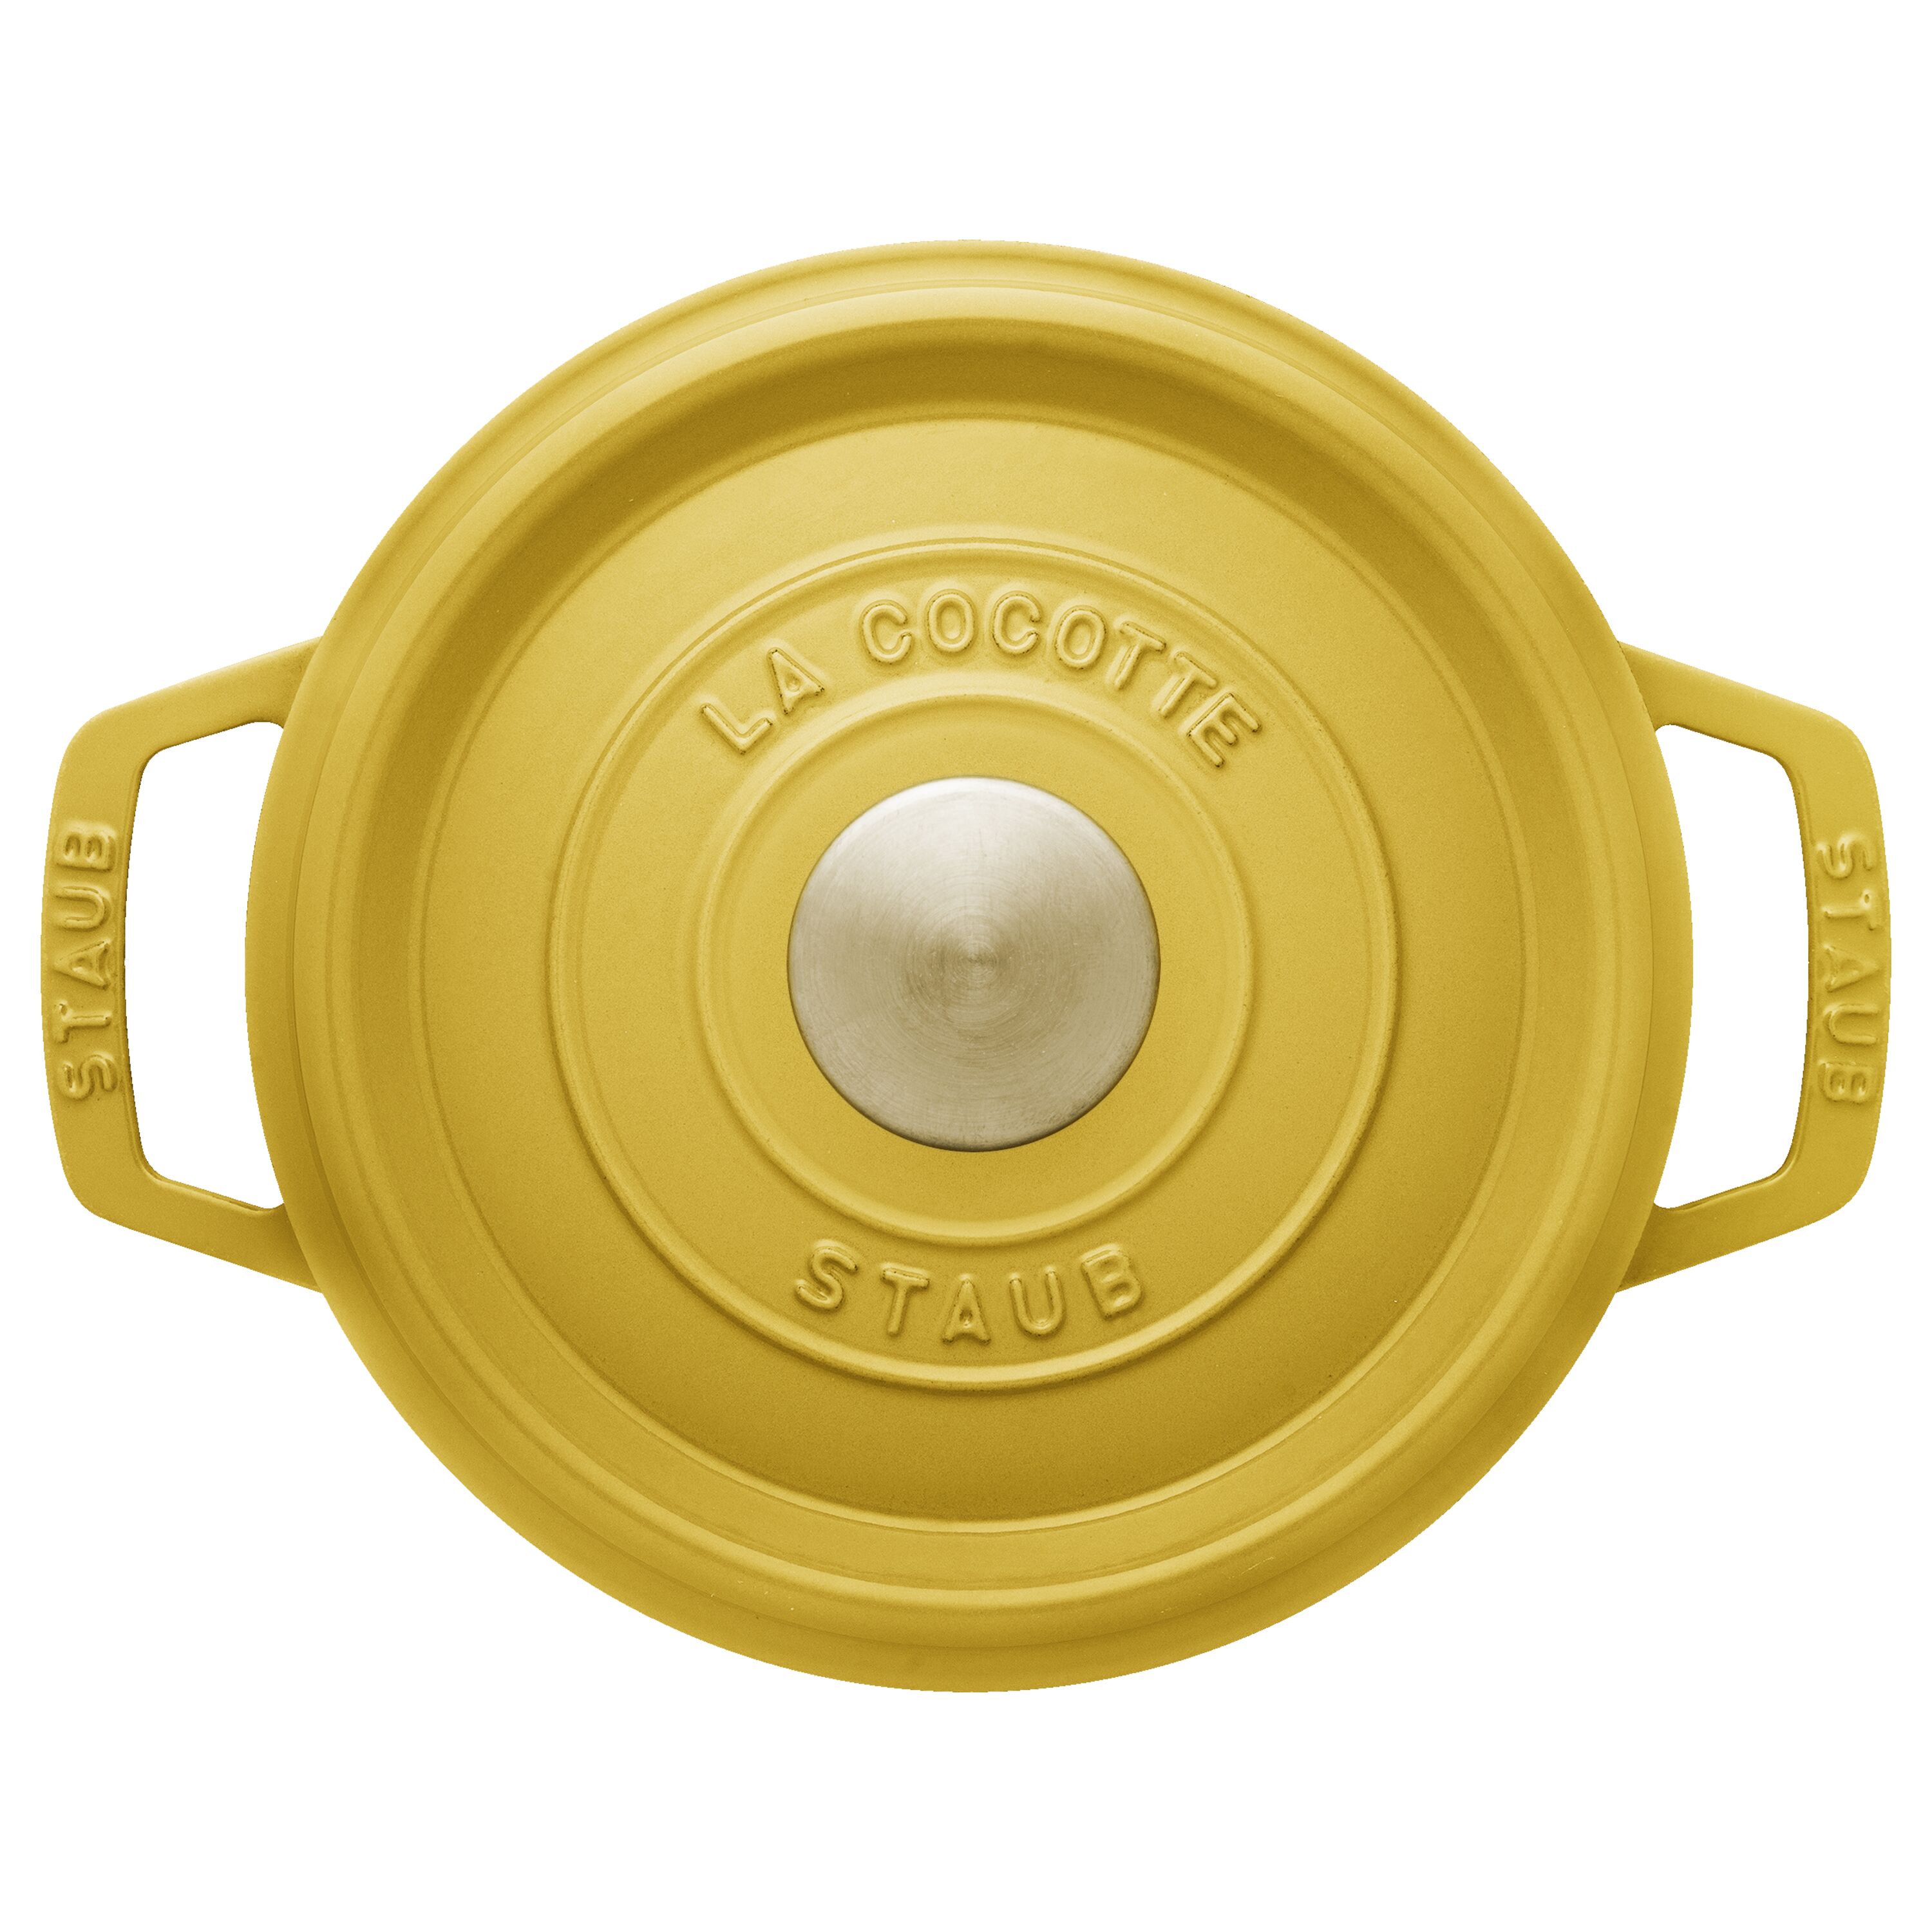 ストウブ鋳物ホーロー鍋ピコ・ココット | ツヴィリング公式オンライン 